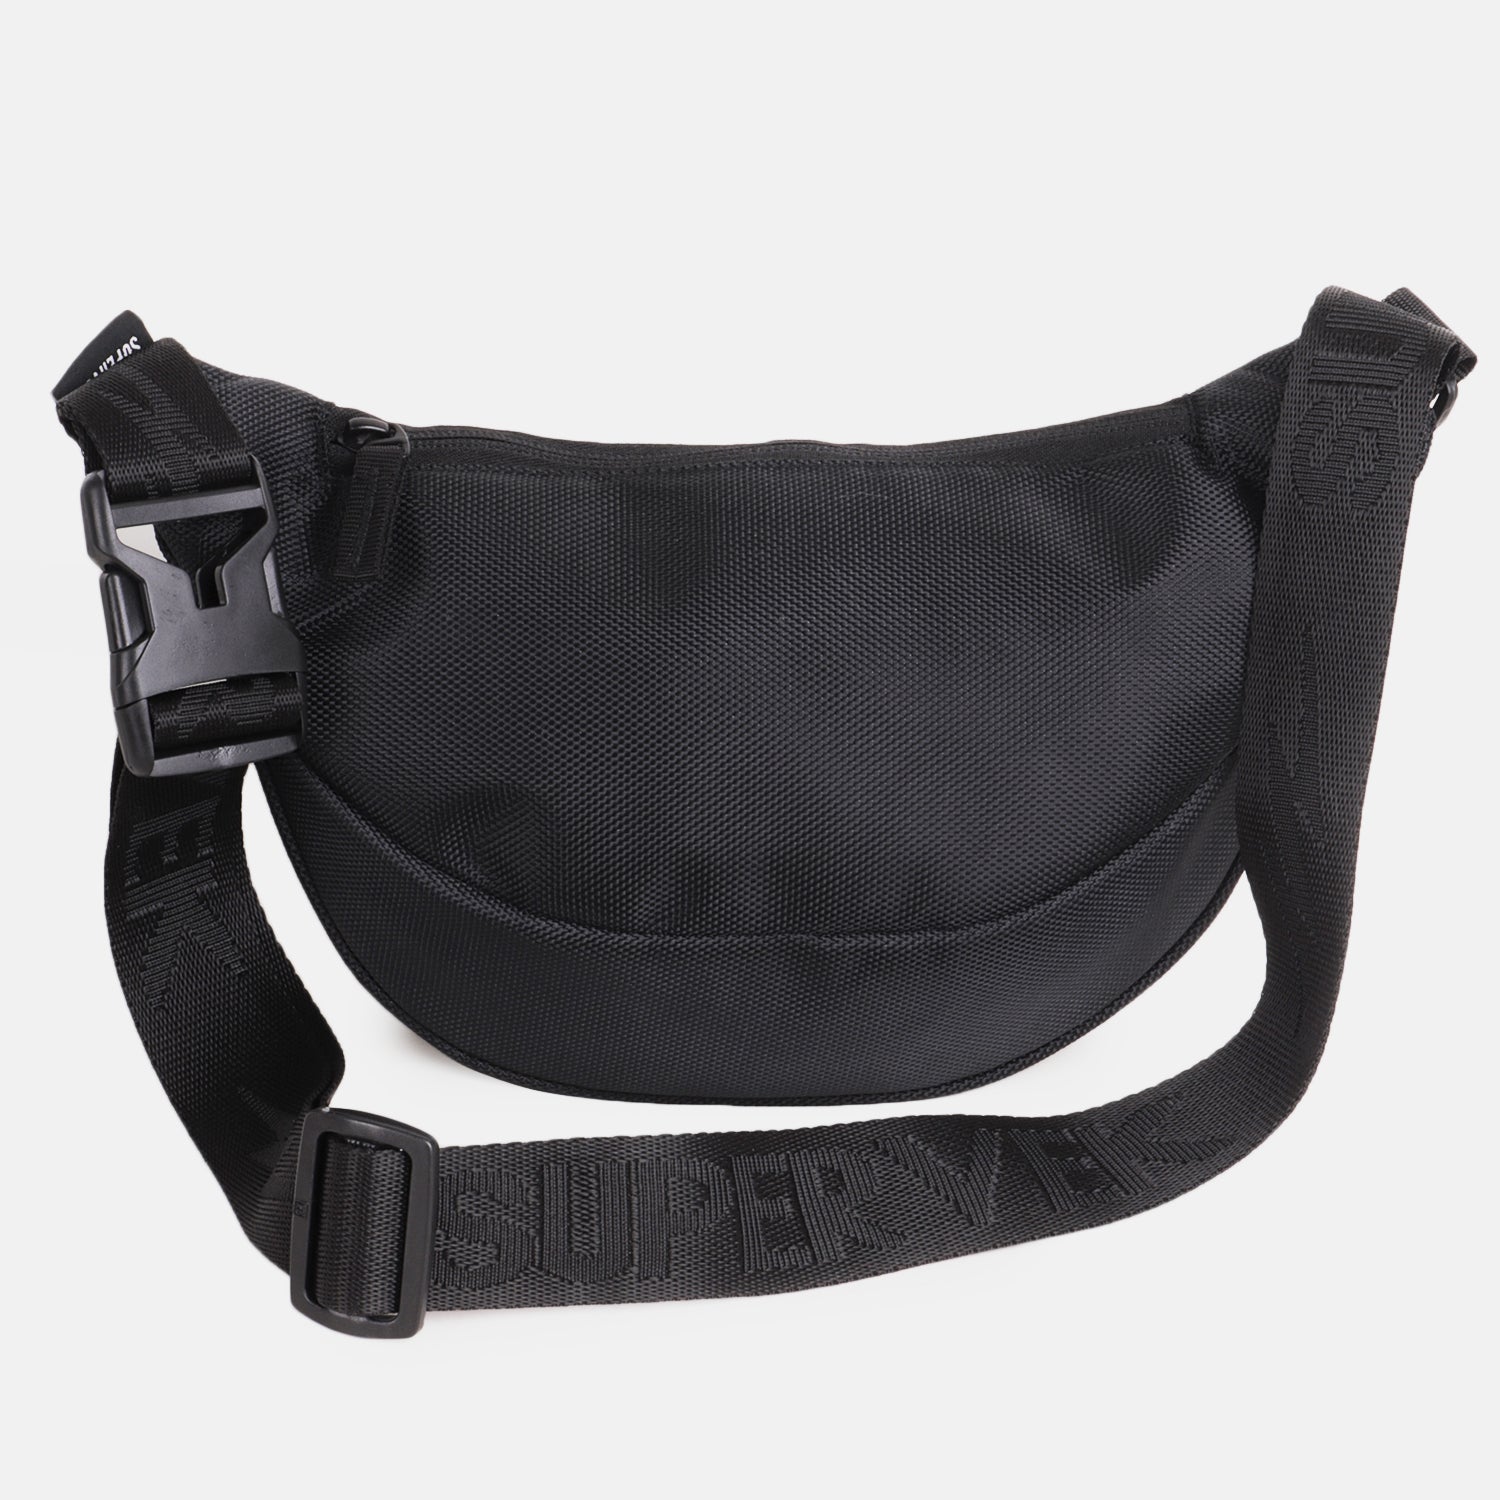 Supervek Crossbody Slinger - Carbon Black - Urban Functional Fanny Hip Bag for Everyday Essentials - Back 